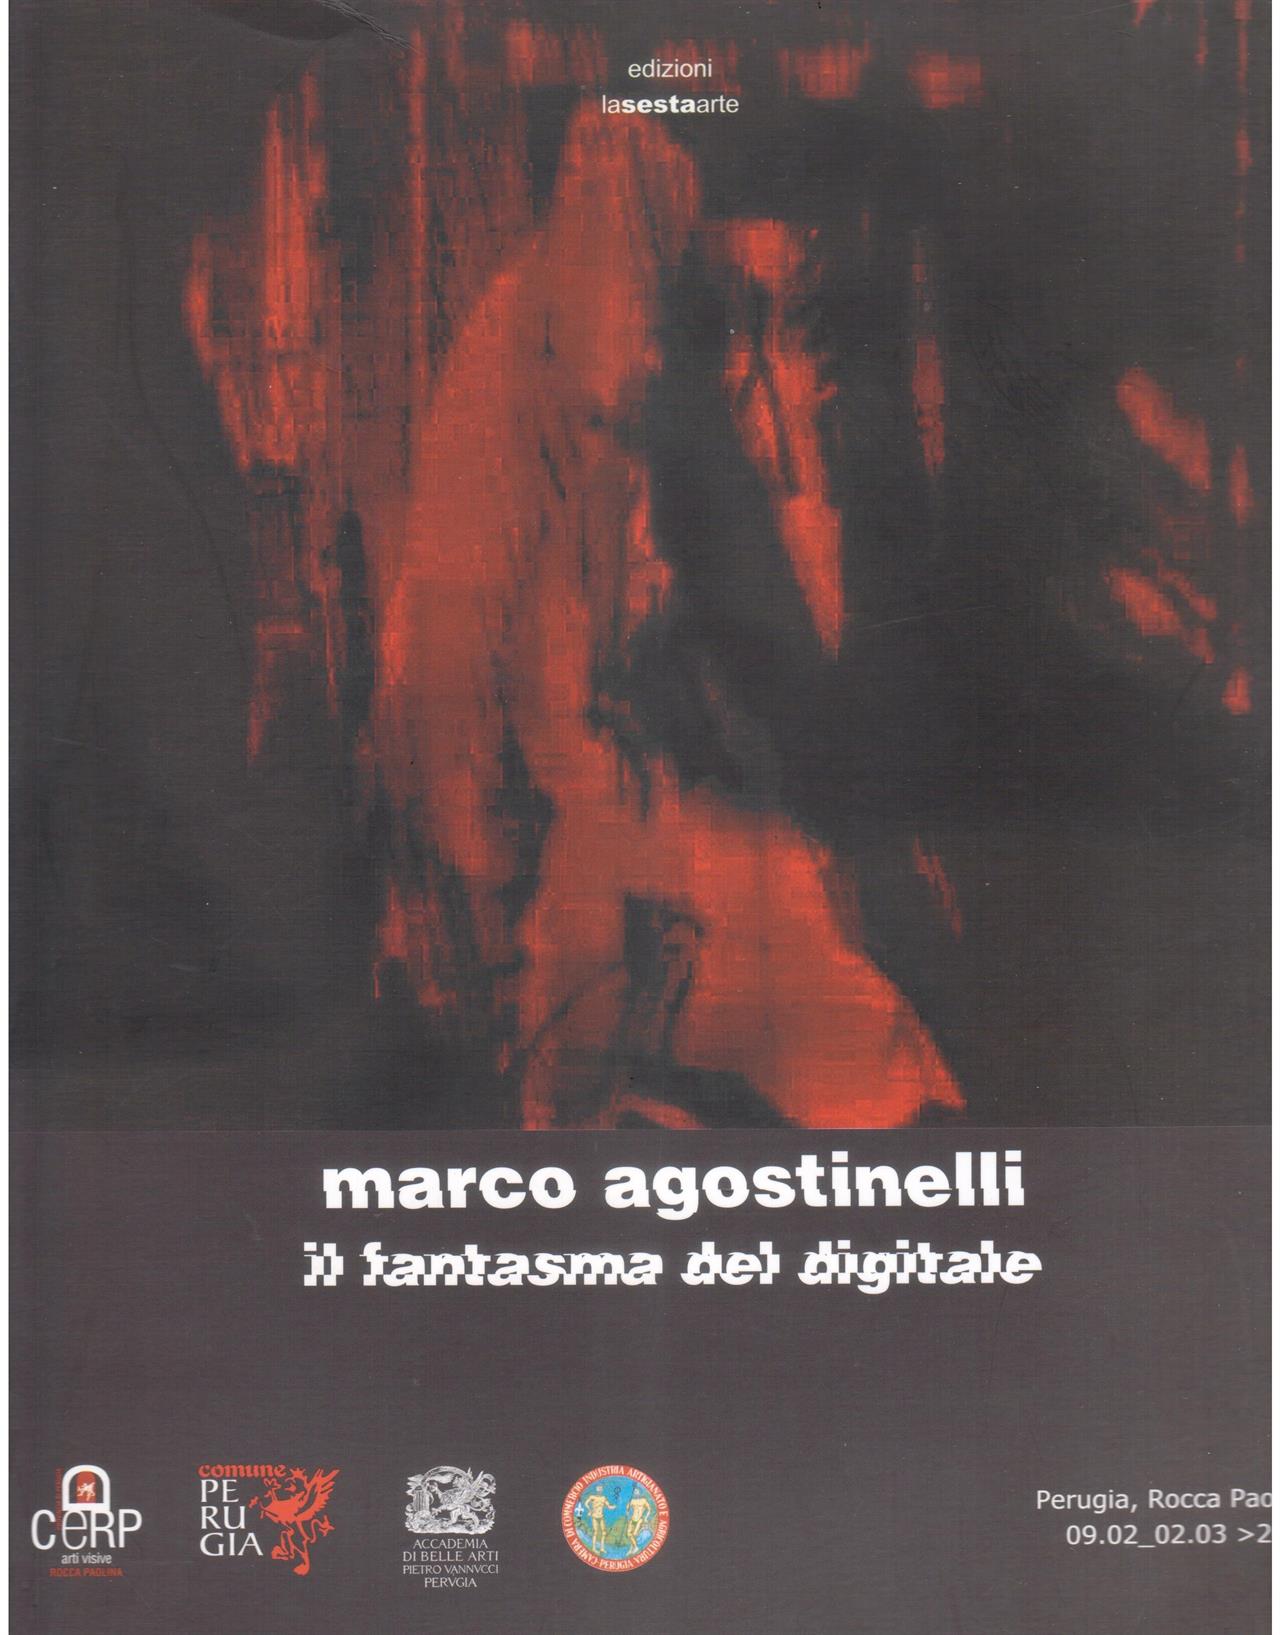 Marco Agostinelli. Il fantasma del digitale